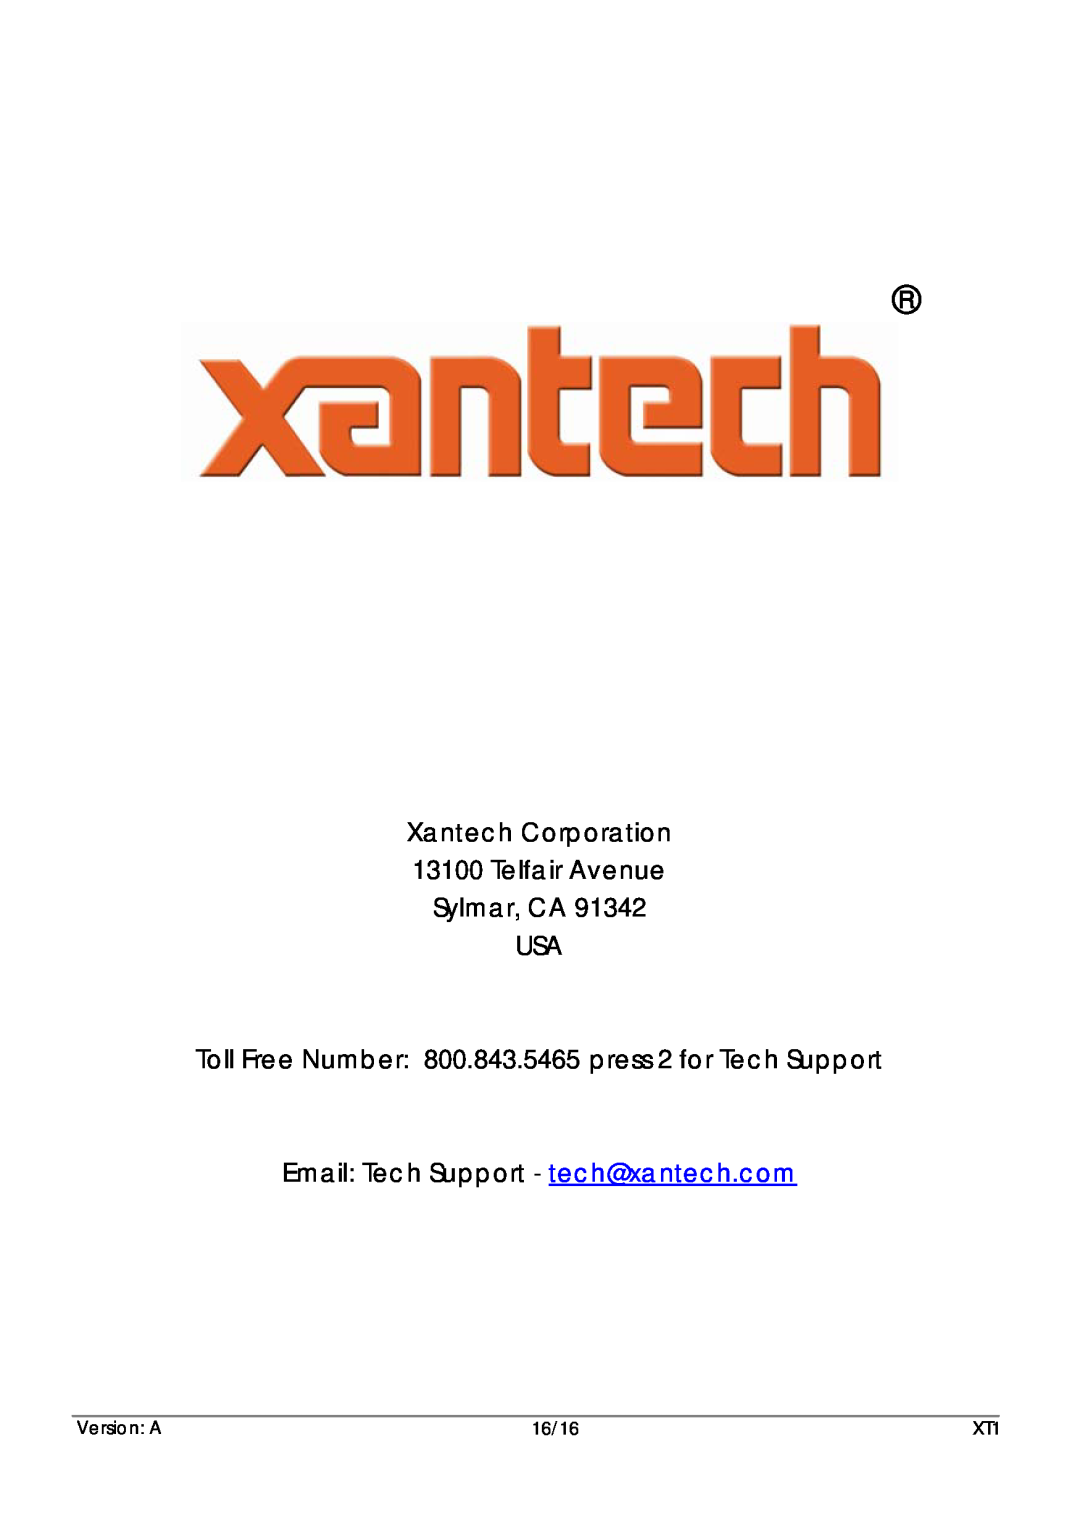 Xantech XT1 Xantech Corporation 13100 Telfair Avenue, Sylmar, CA USA, Email: Tech Support - tech@xantech.com, Version A 